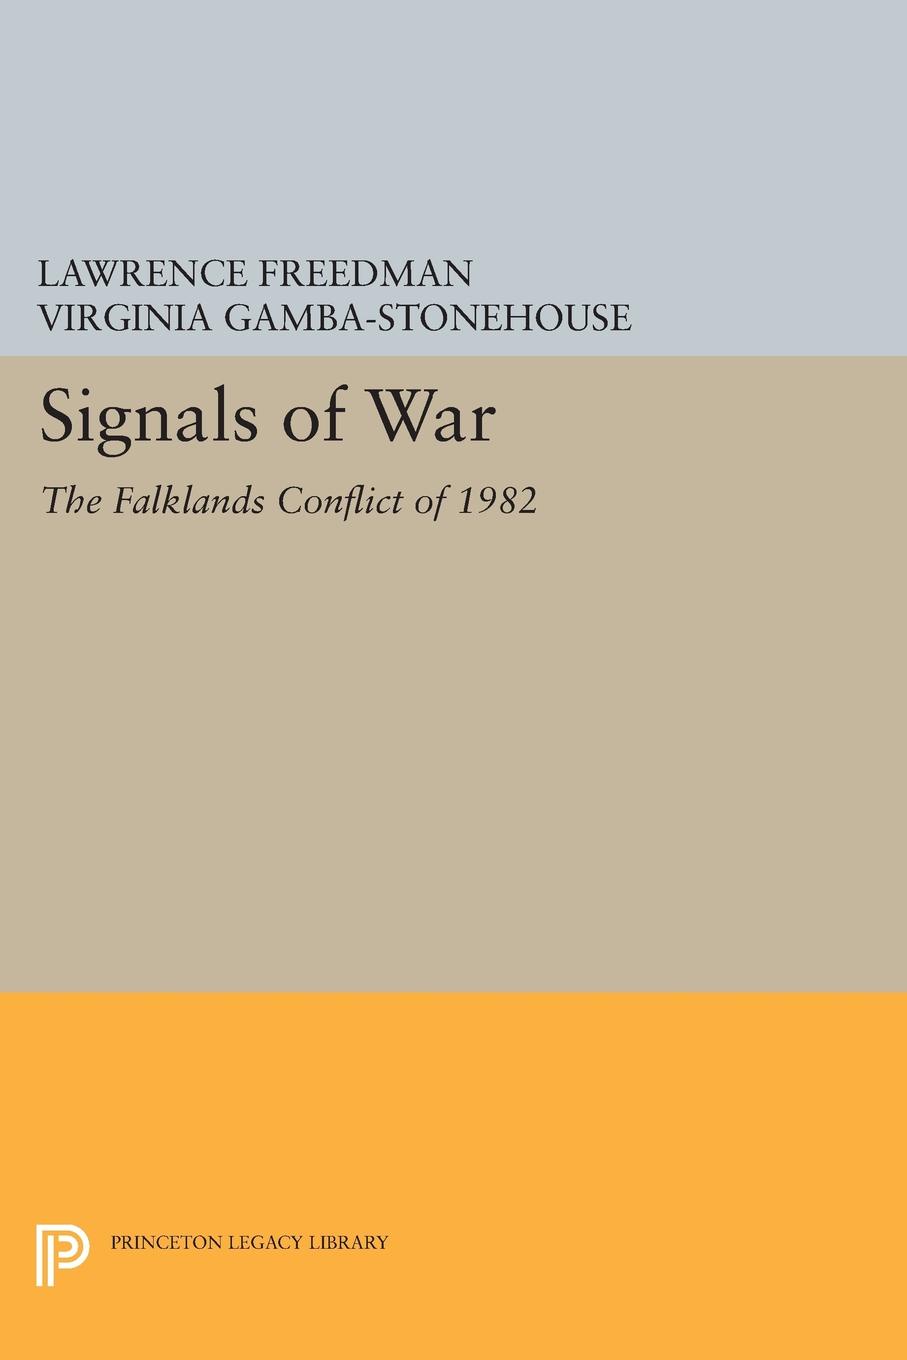 Signals of War. The Falklands Conflict of 1982